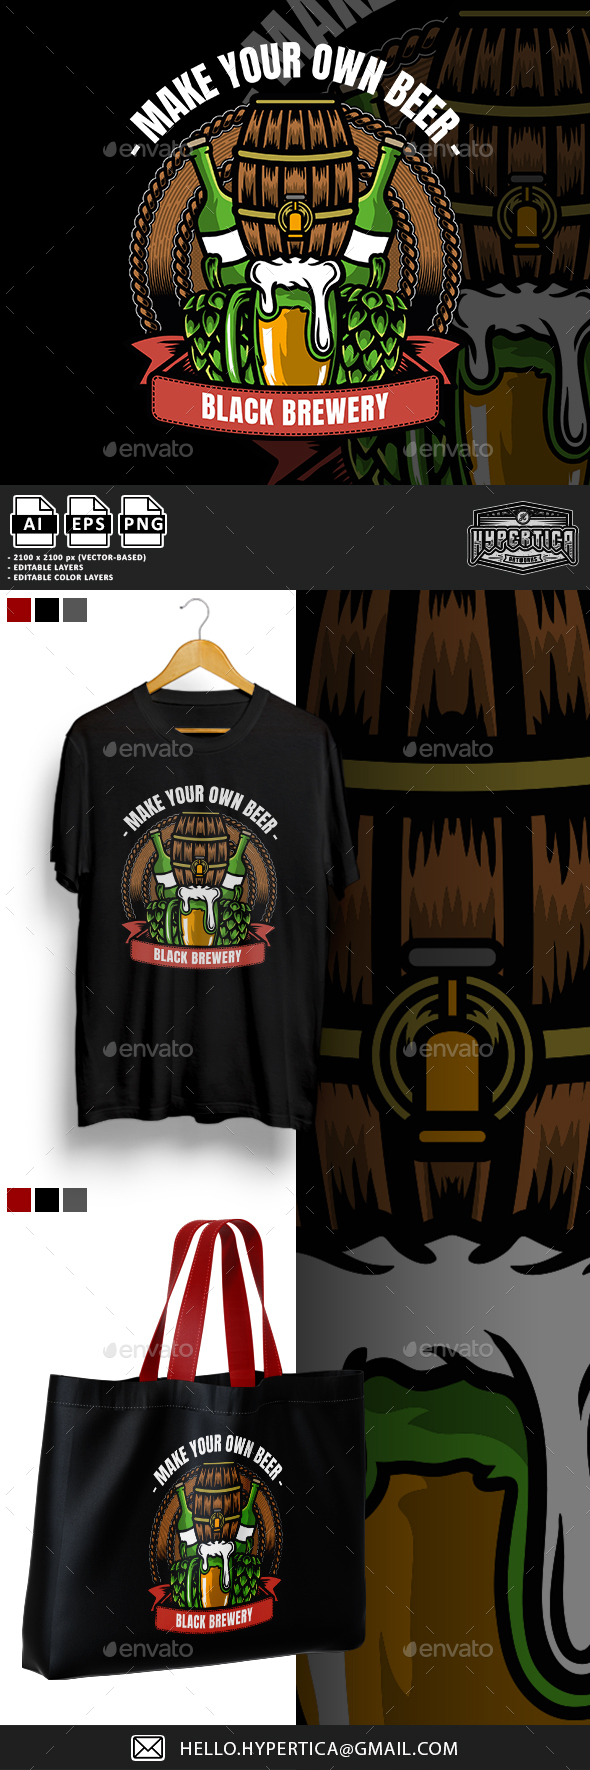 [DOWNLOAD]Vintage Brewery Beer Badge Logo Illustration T-shirt Design